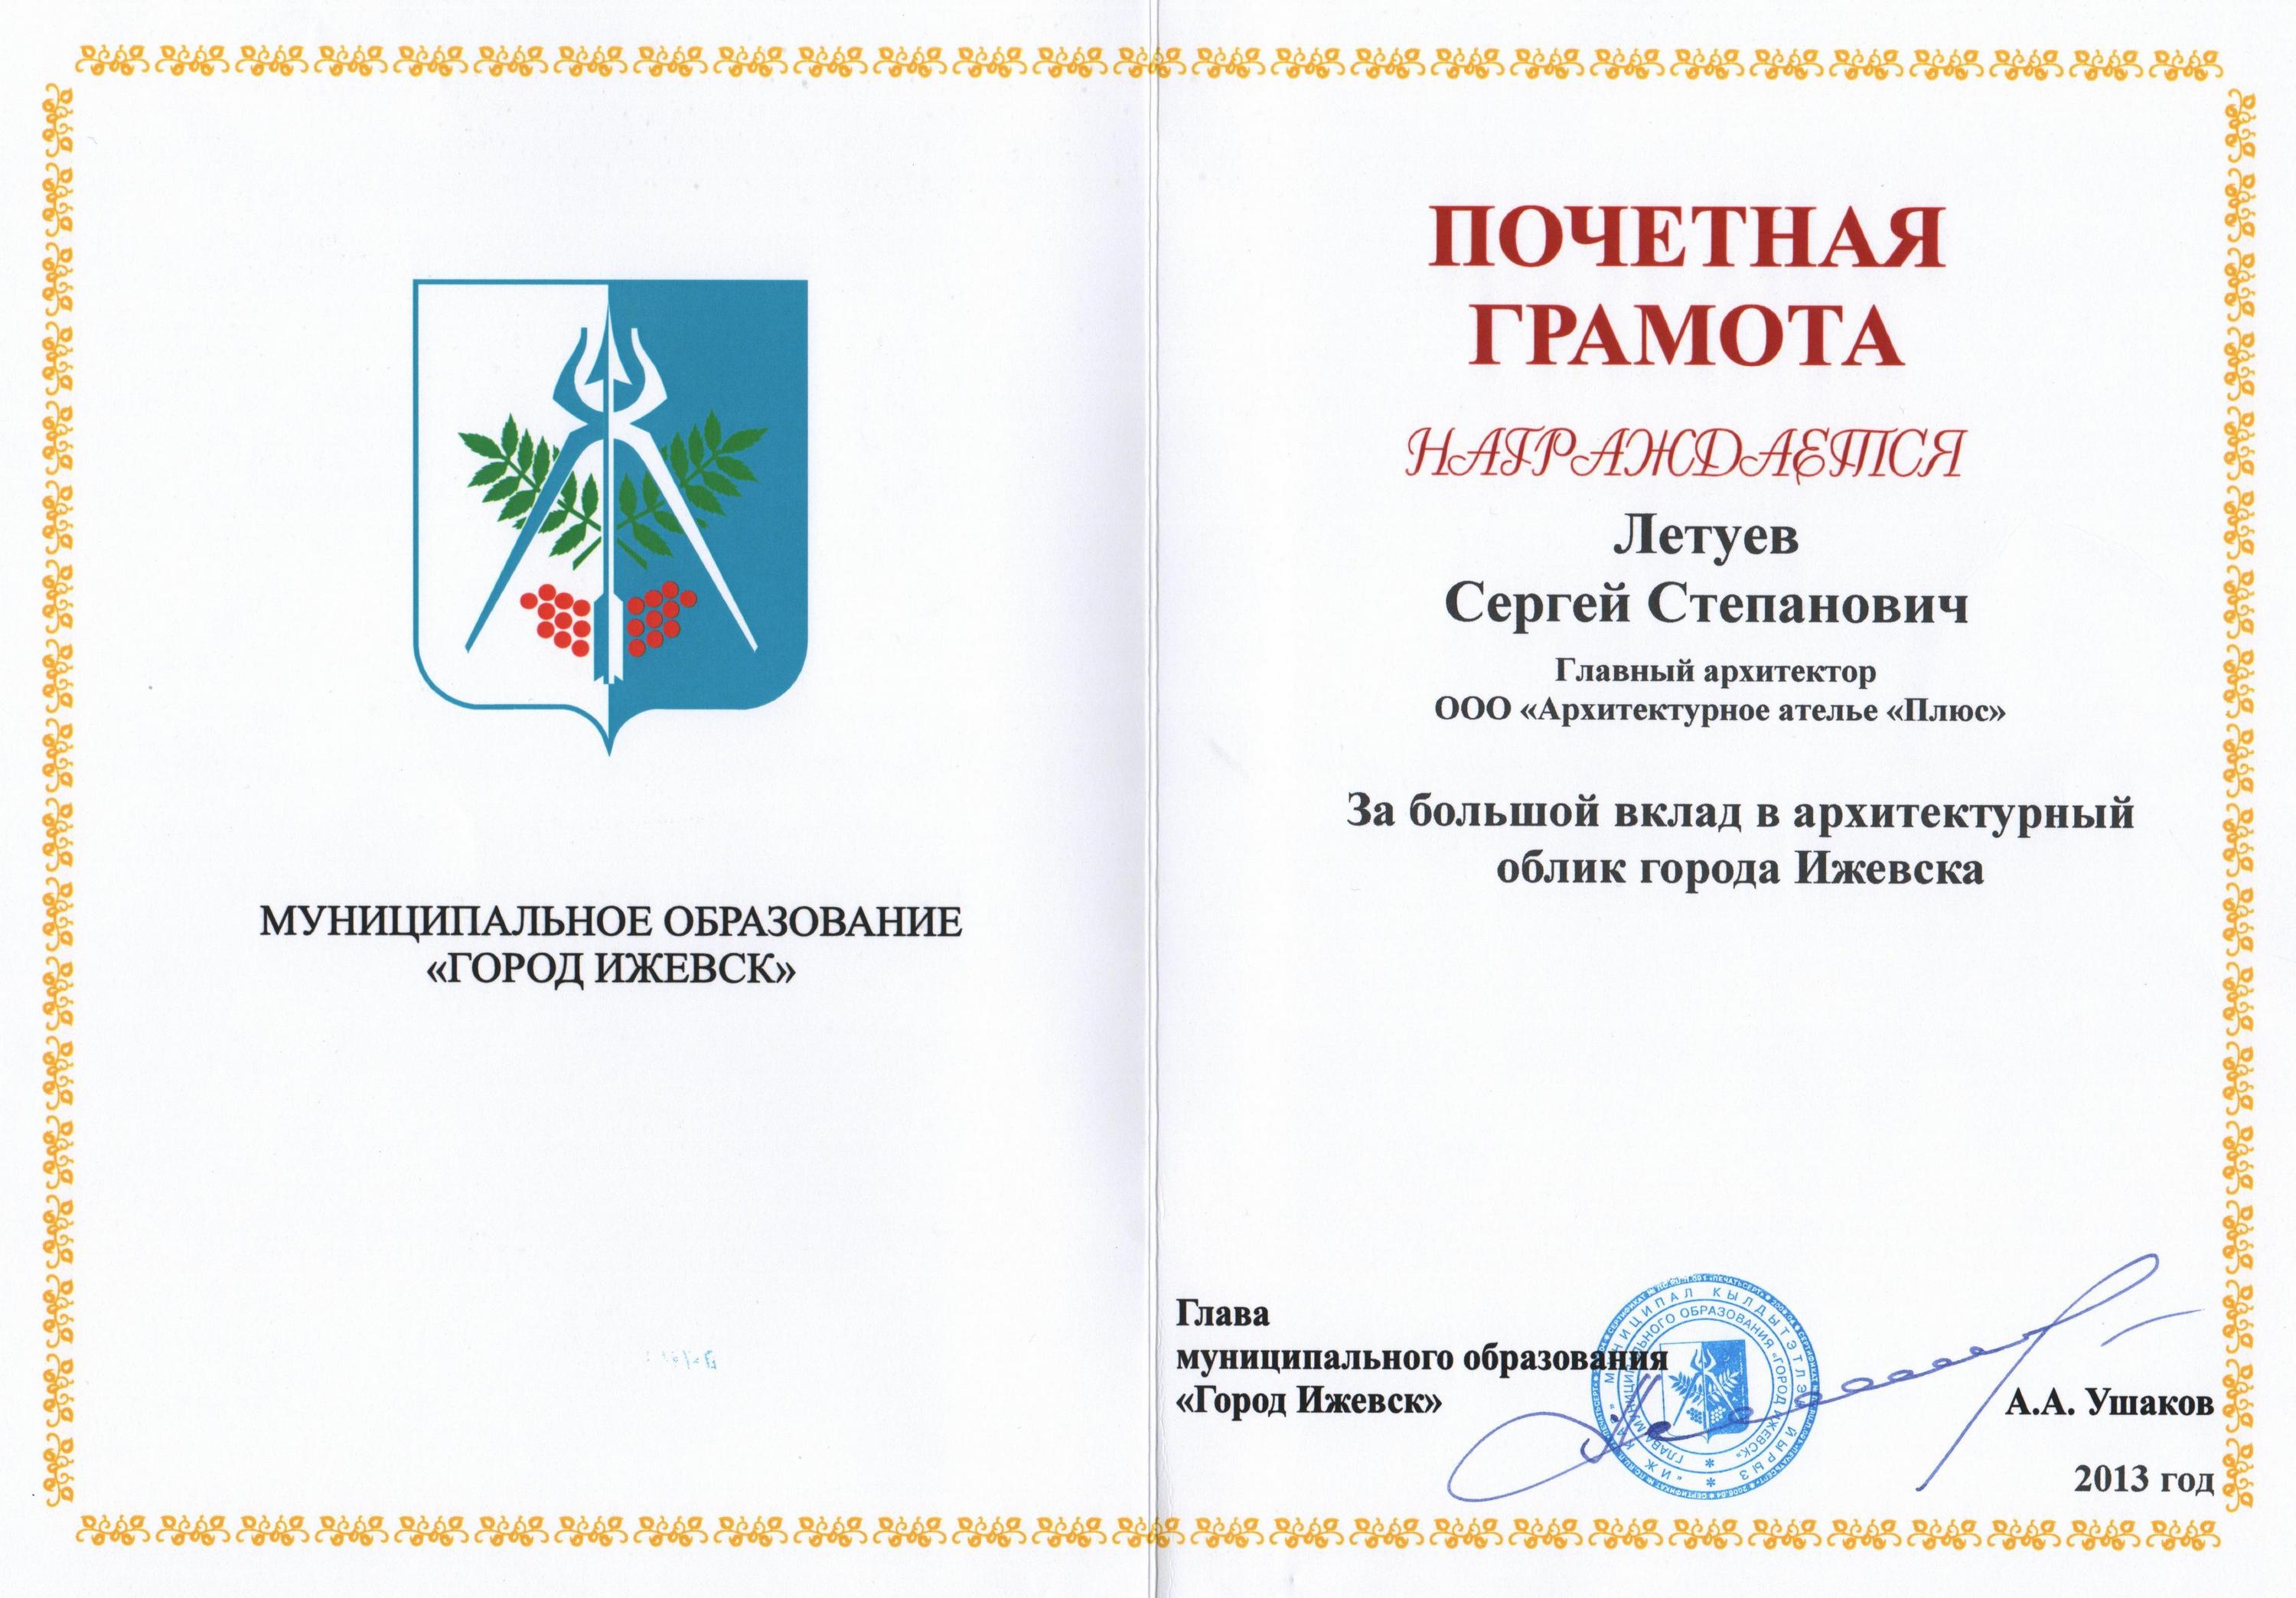 Почетная грамота от муниципального образования «Город Ижевск» за большой вклад в архитектурный облик Ижевска (2013)